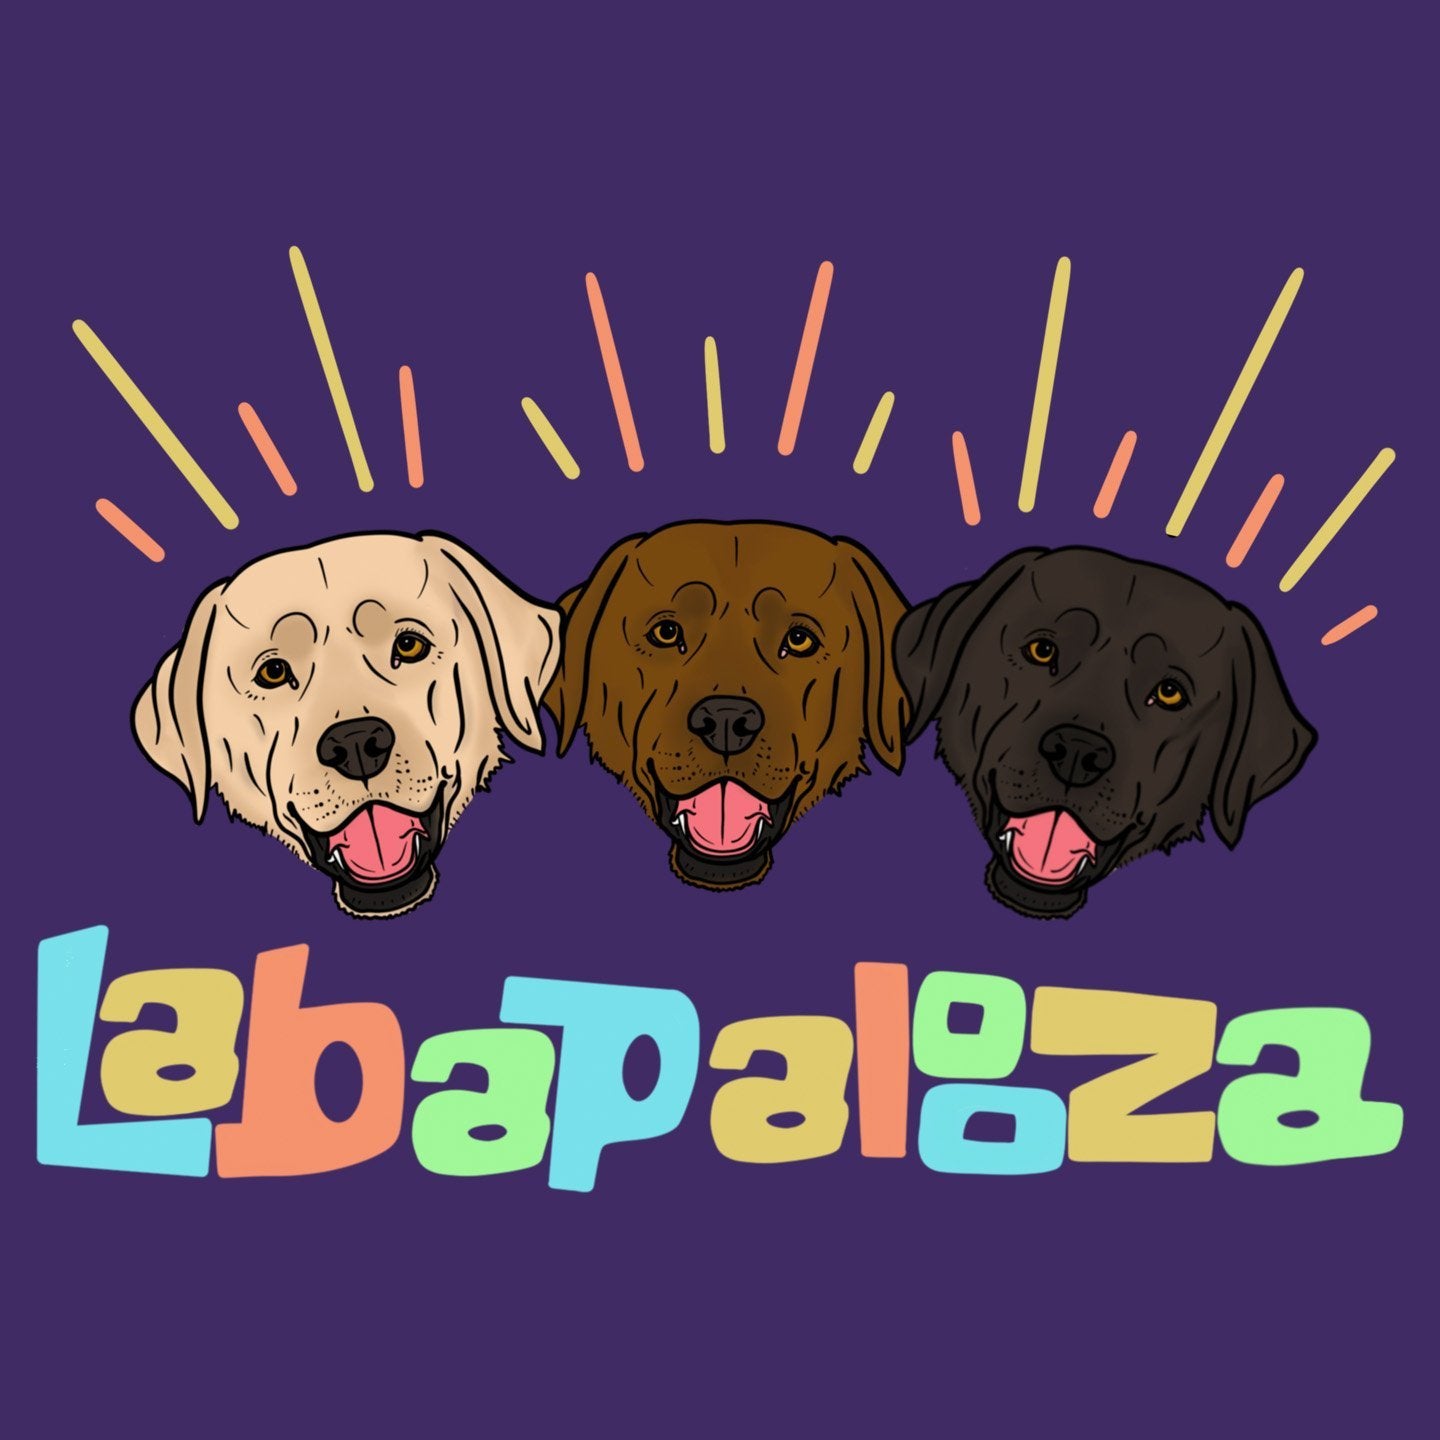 Labapalooza - Women's Fitted T-Shirt